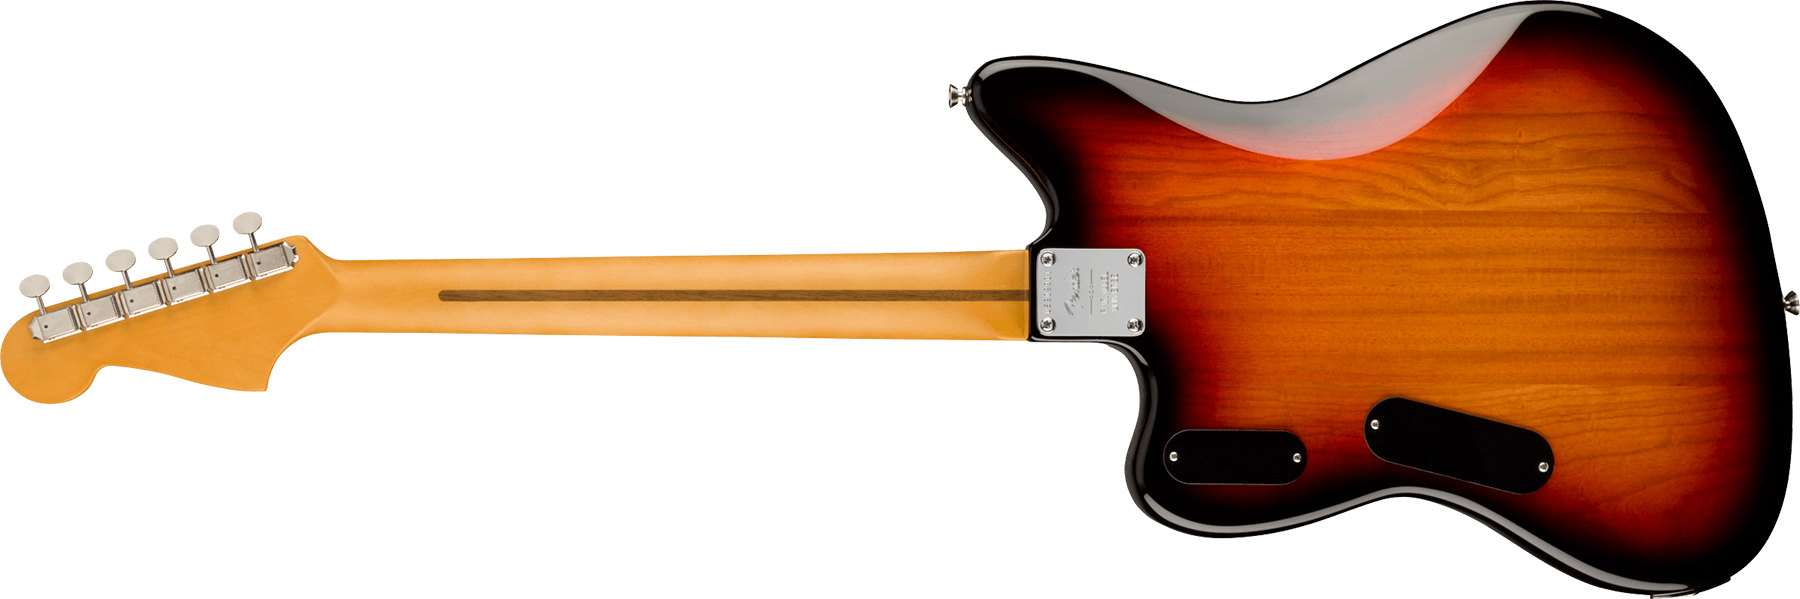 Fender Jazzmaster Spark-o-matic Volume Ii Parallel Universe Hhh Trem Rw - 3-color Sunburst - Guitare Électrique RÉtro Rock - Variation 1